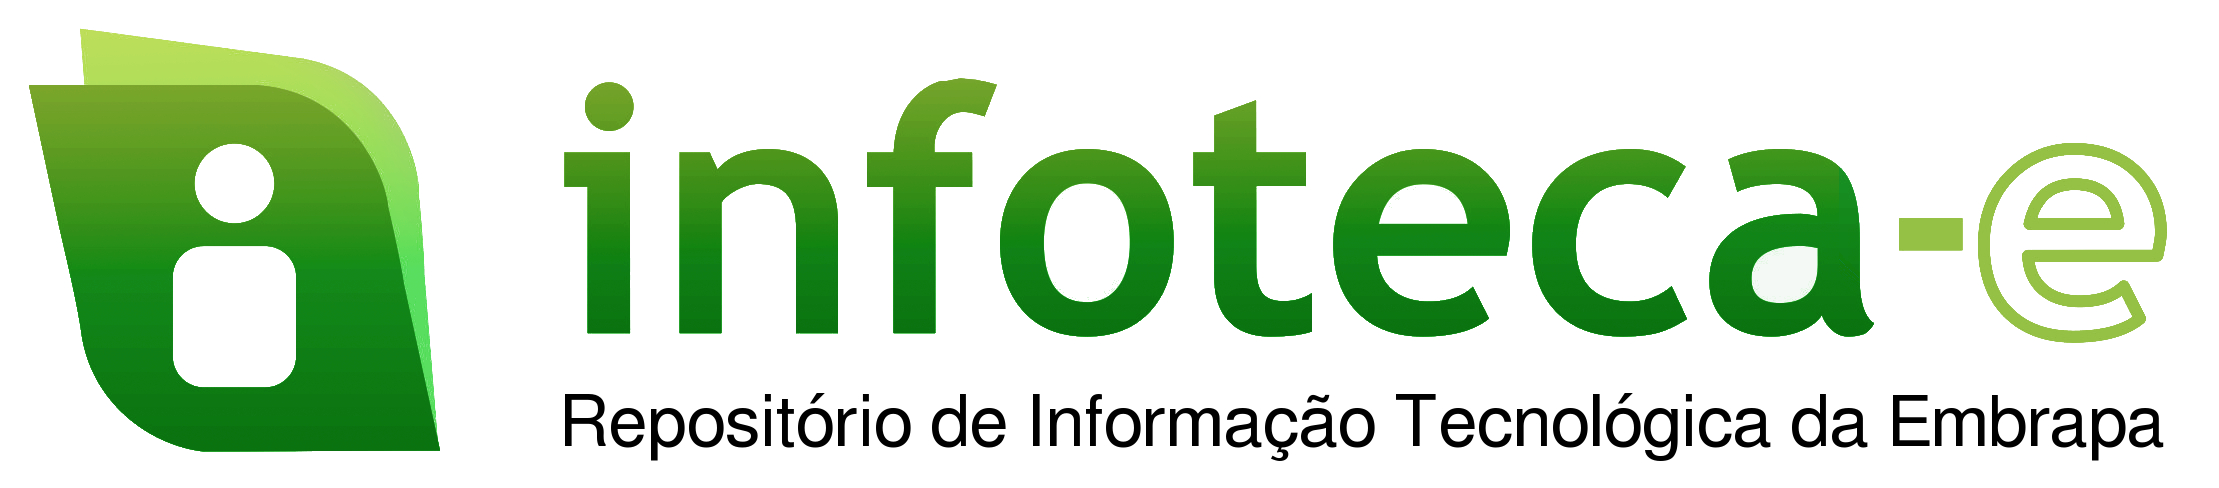 Infoteca logo